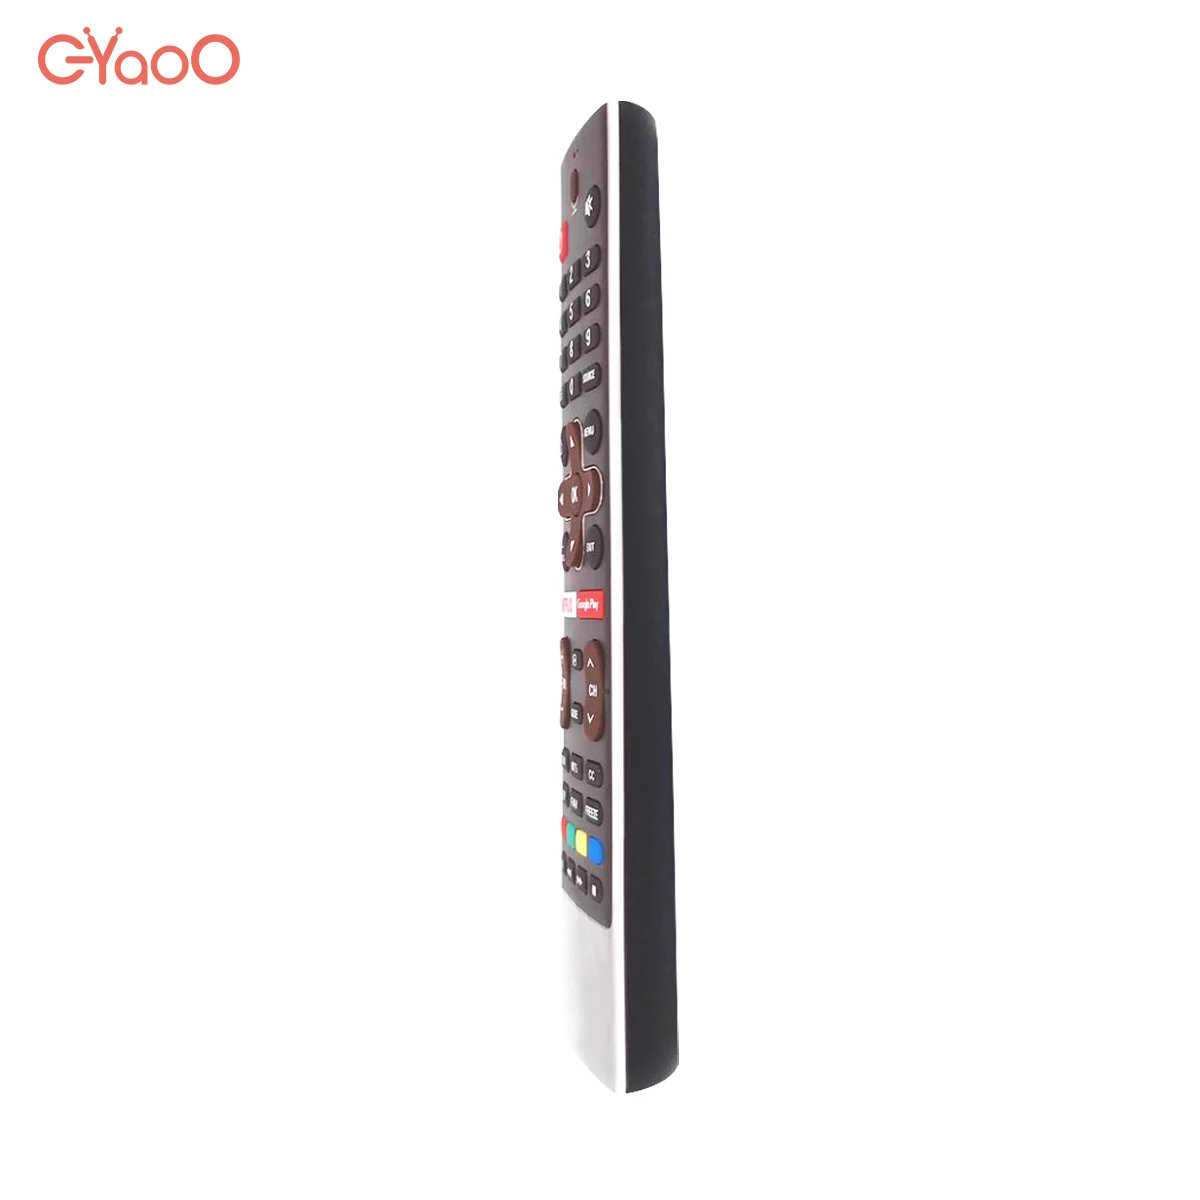 Голосовое дистанционное управление для Skyworth Coocaa HS-7700J Smart TV 50G2 50G2A 55G2A Android с